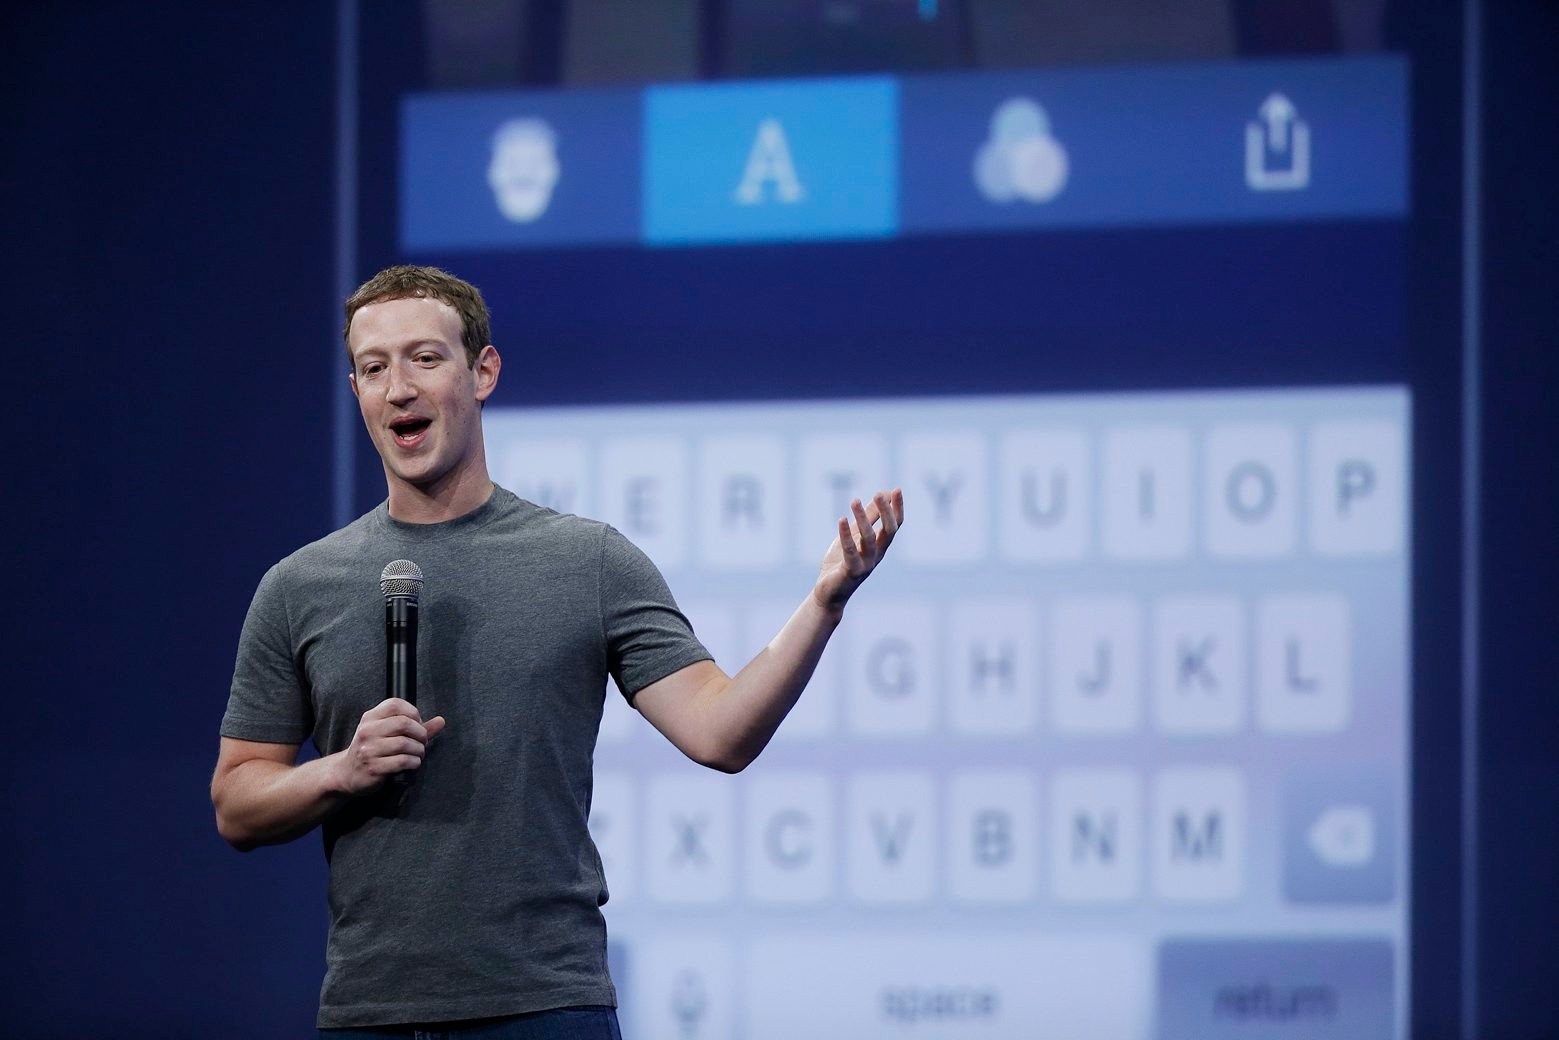 Le PDG de Facebook, Mark Zuckerberg, a démenti les accusations de manipulation aux Etats-Unis. (Archive)